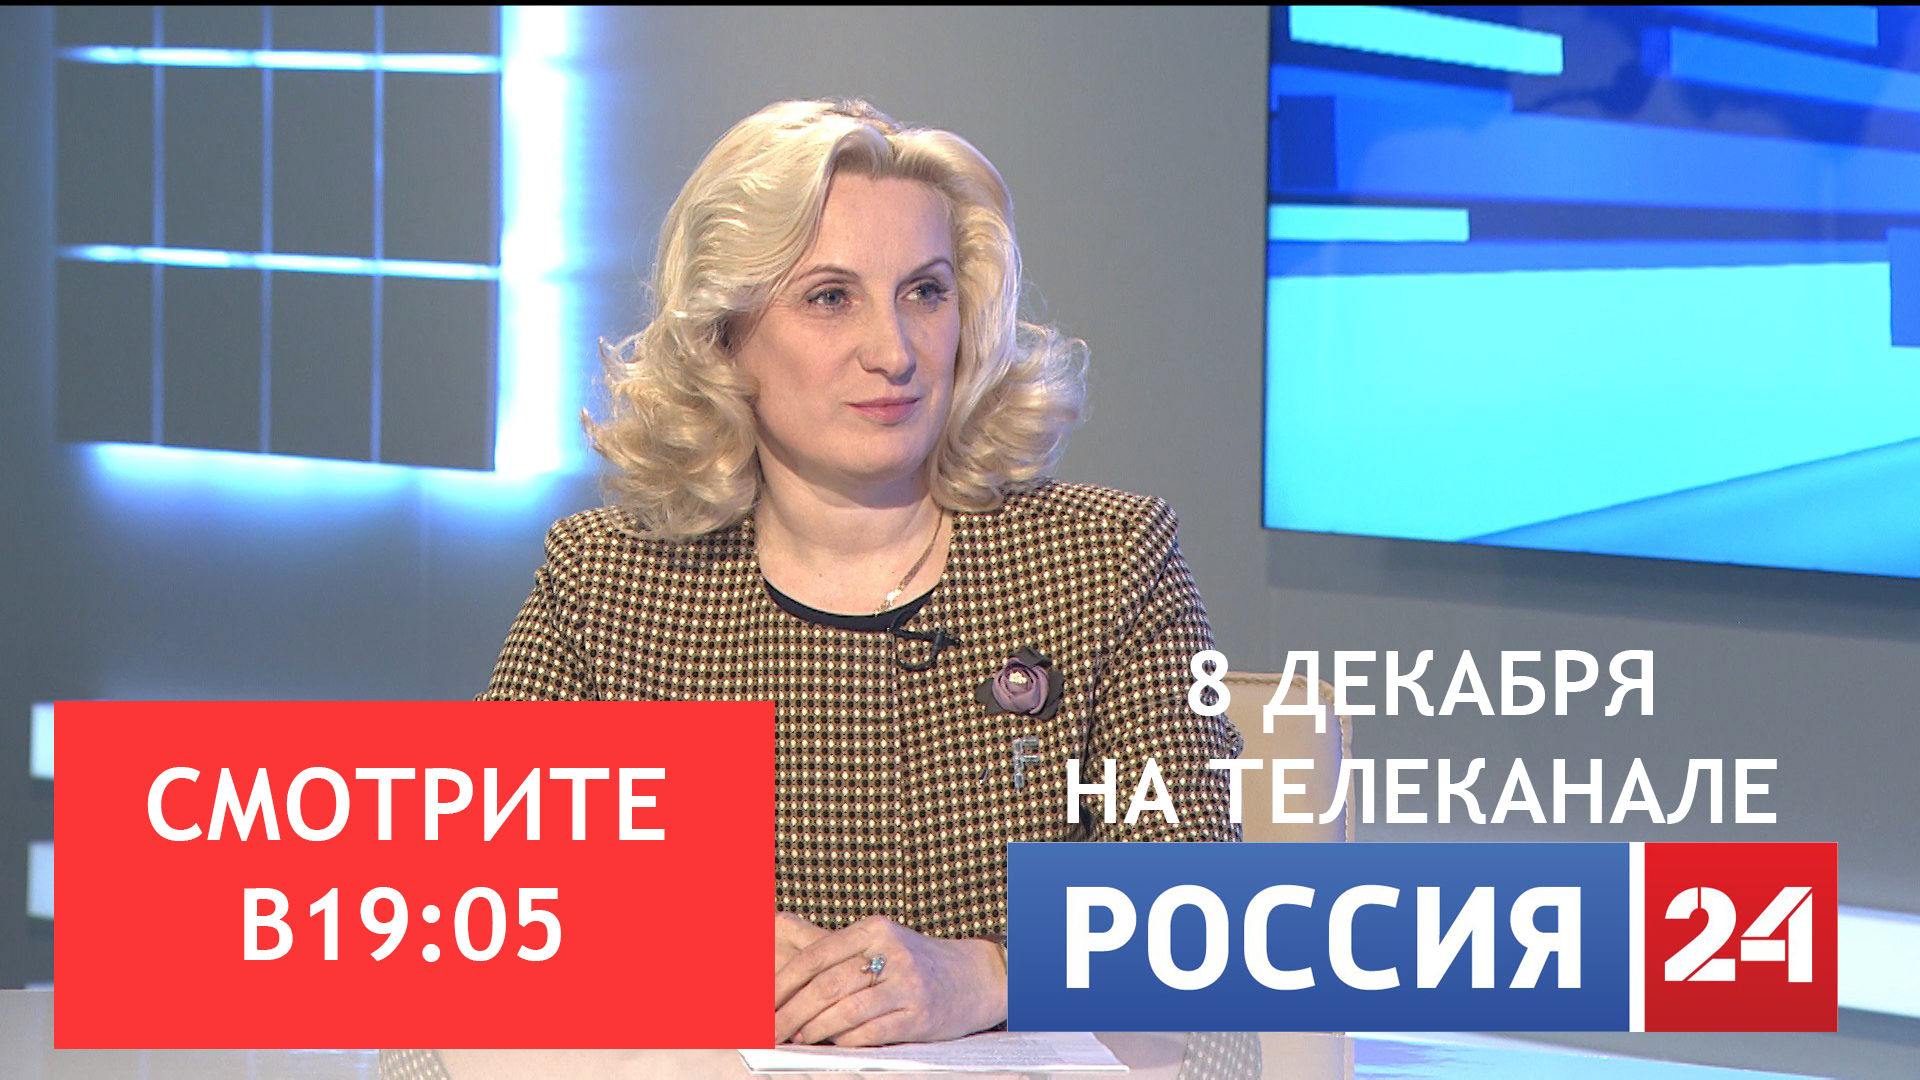 Не пропустите! Интервью с министром молодёжной политики, спорта и туризма  Лидией Александровной Батюковой.